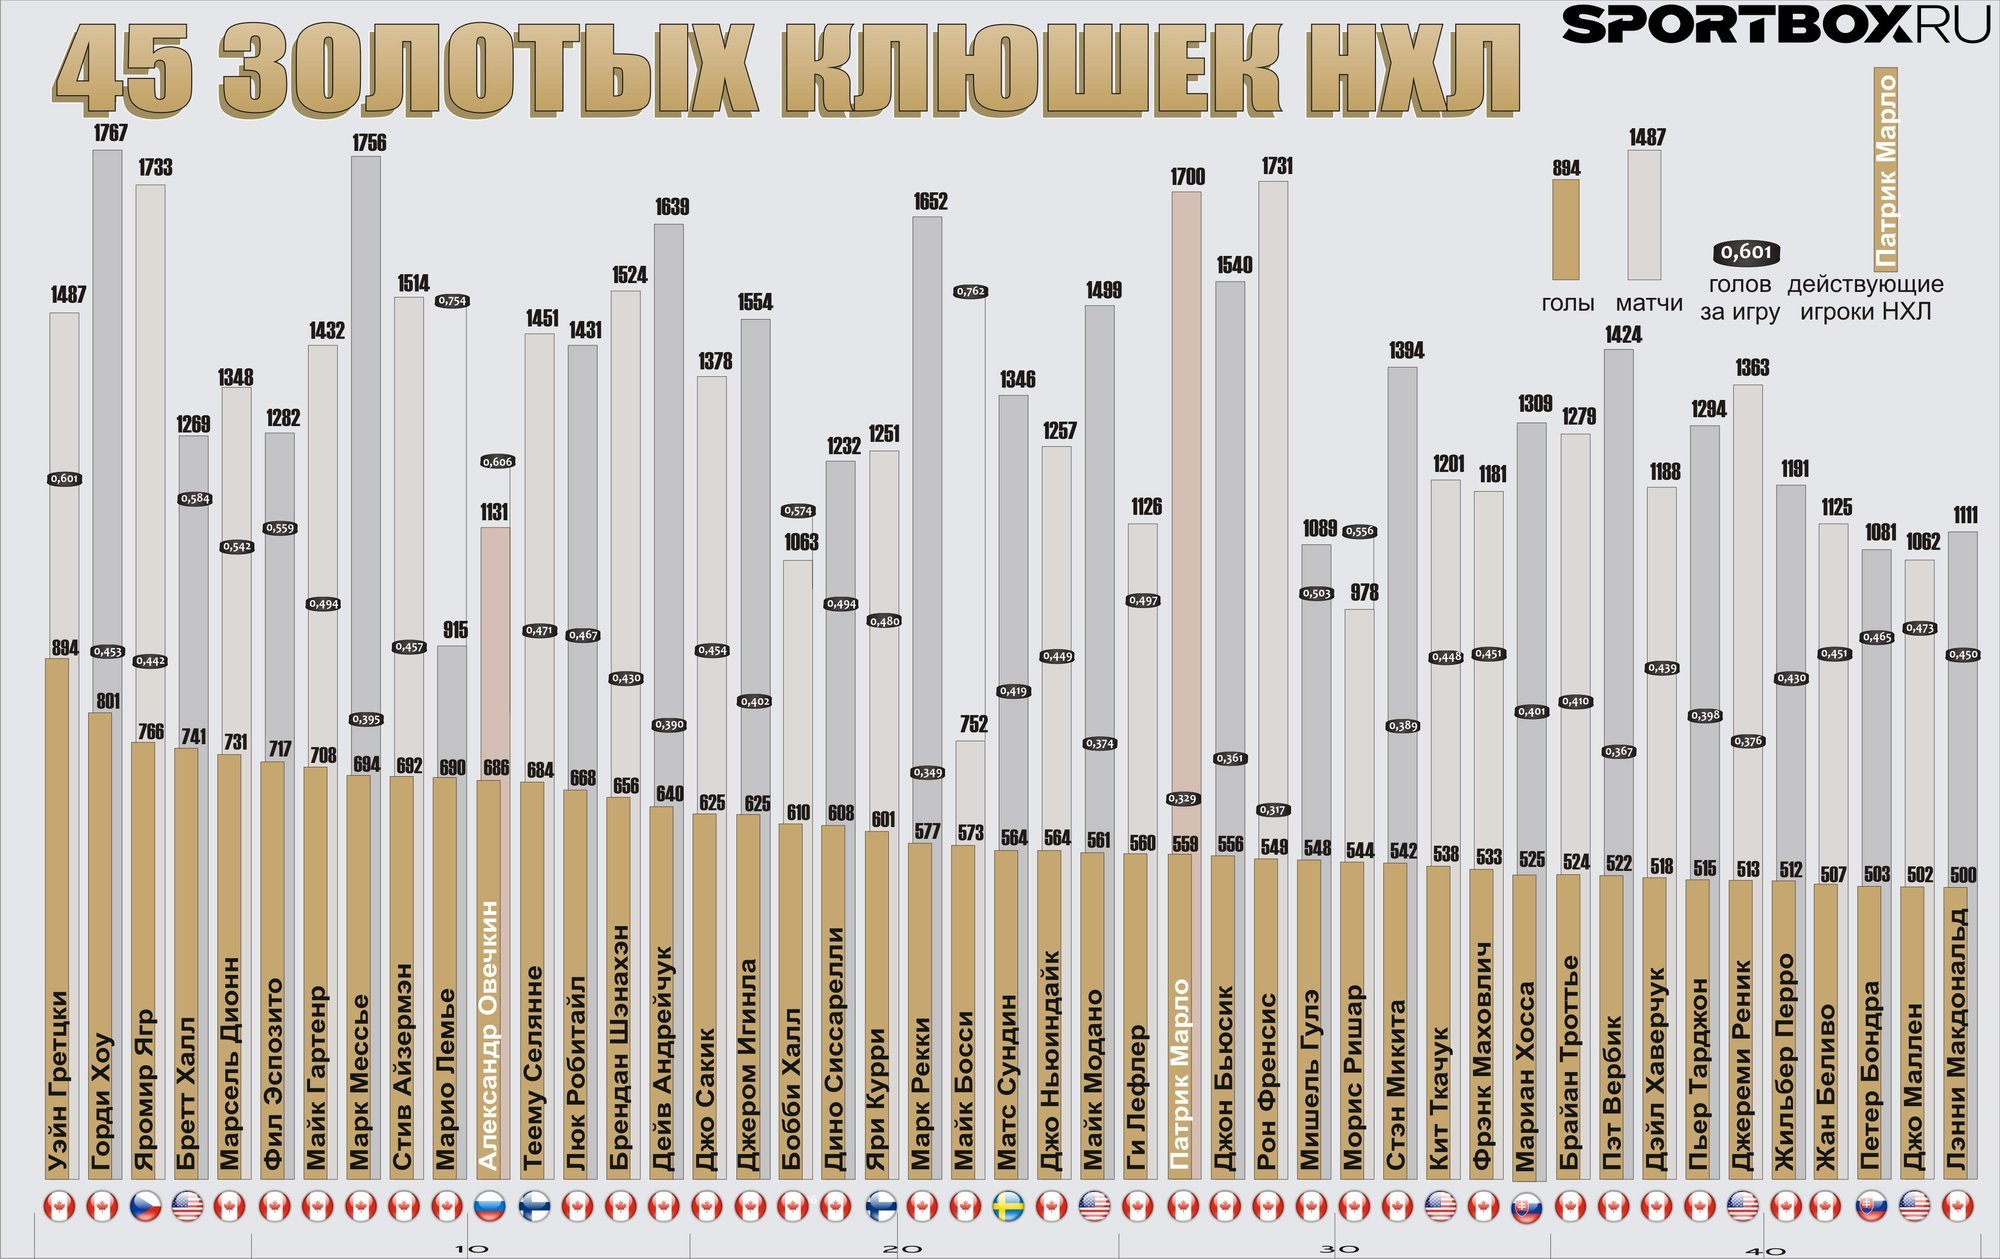 Овечкин статистика в нхл за все время. НХЛ статистика игроков за всю историю Снайперы. Лучшие Снайперы НХЛ. Таблица снайперов НХЛ. Список снайперов НХЛ за всю историю.